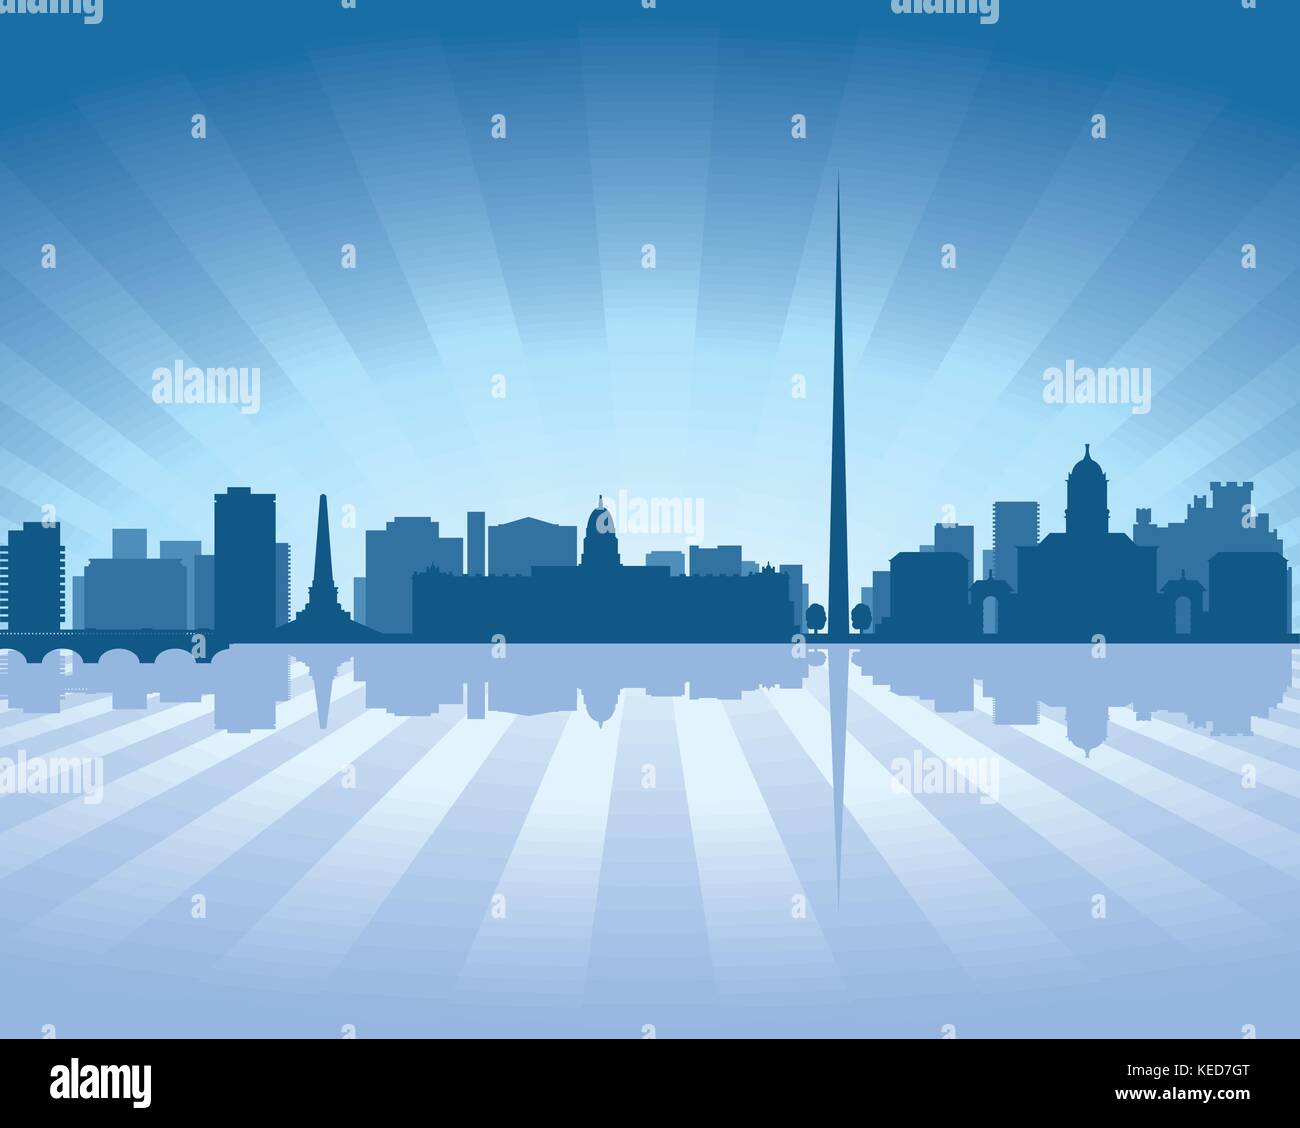 Dublin, Irland skyline Abbildung mit Reflexion im Wasser Stock Vektor